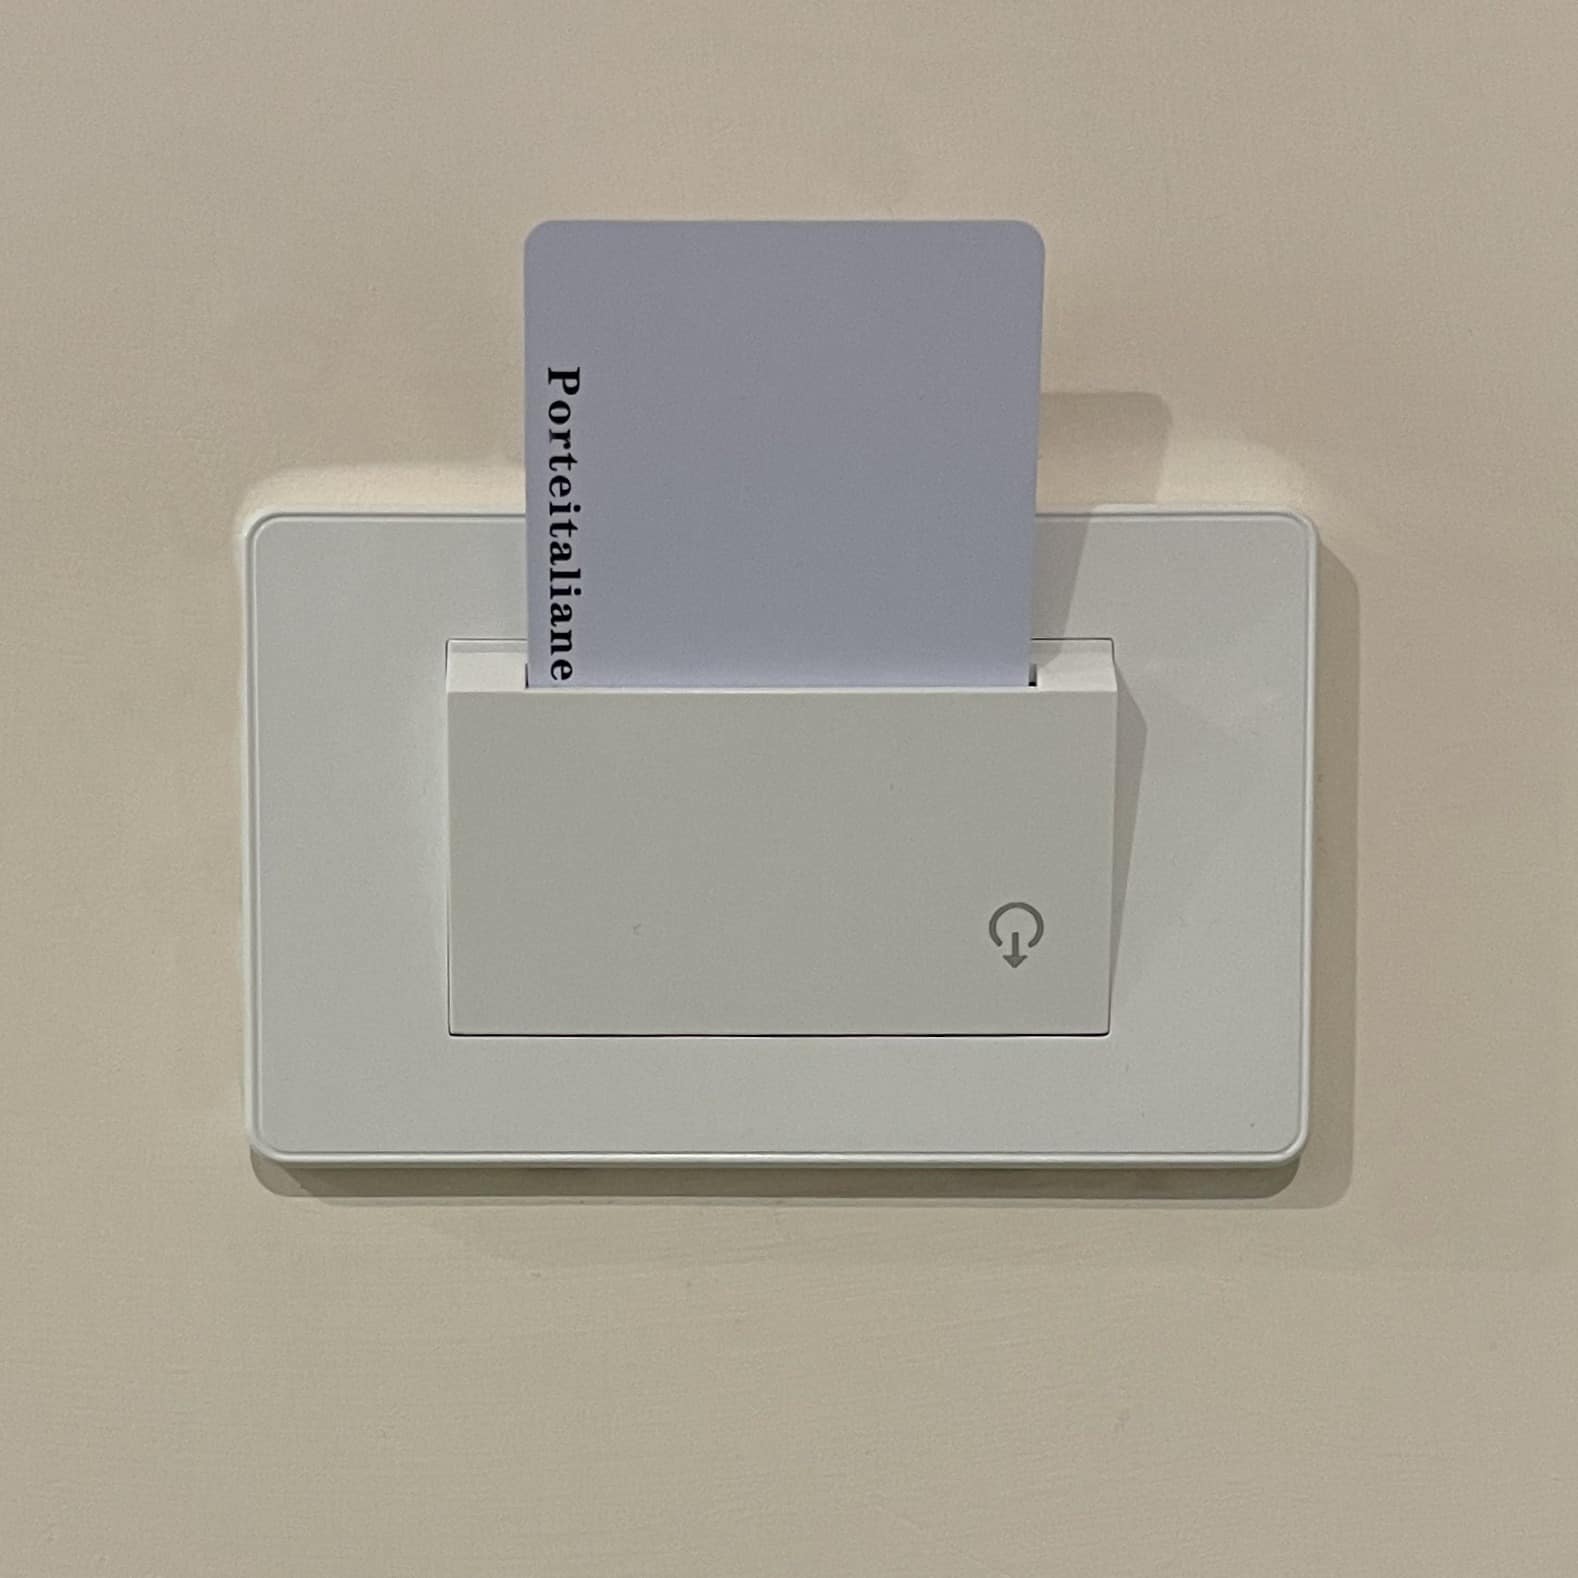 Tasca personalizzata per risparmiare energia con timer su cassetta 503